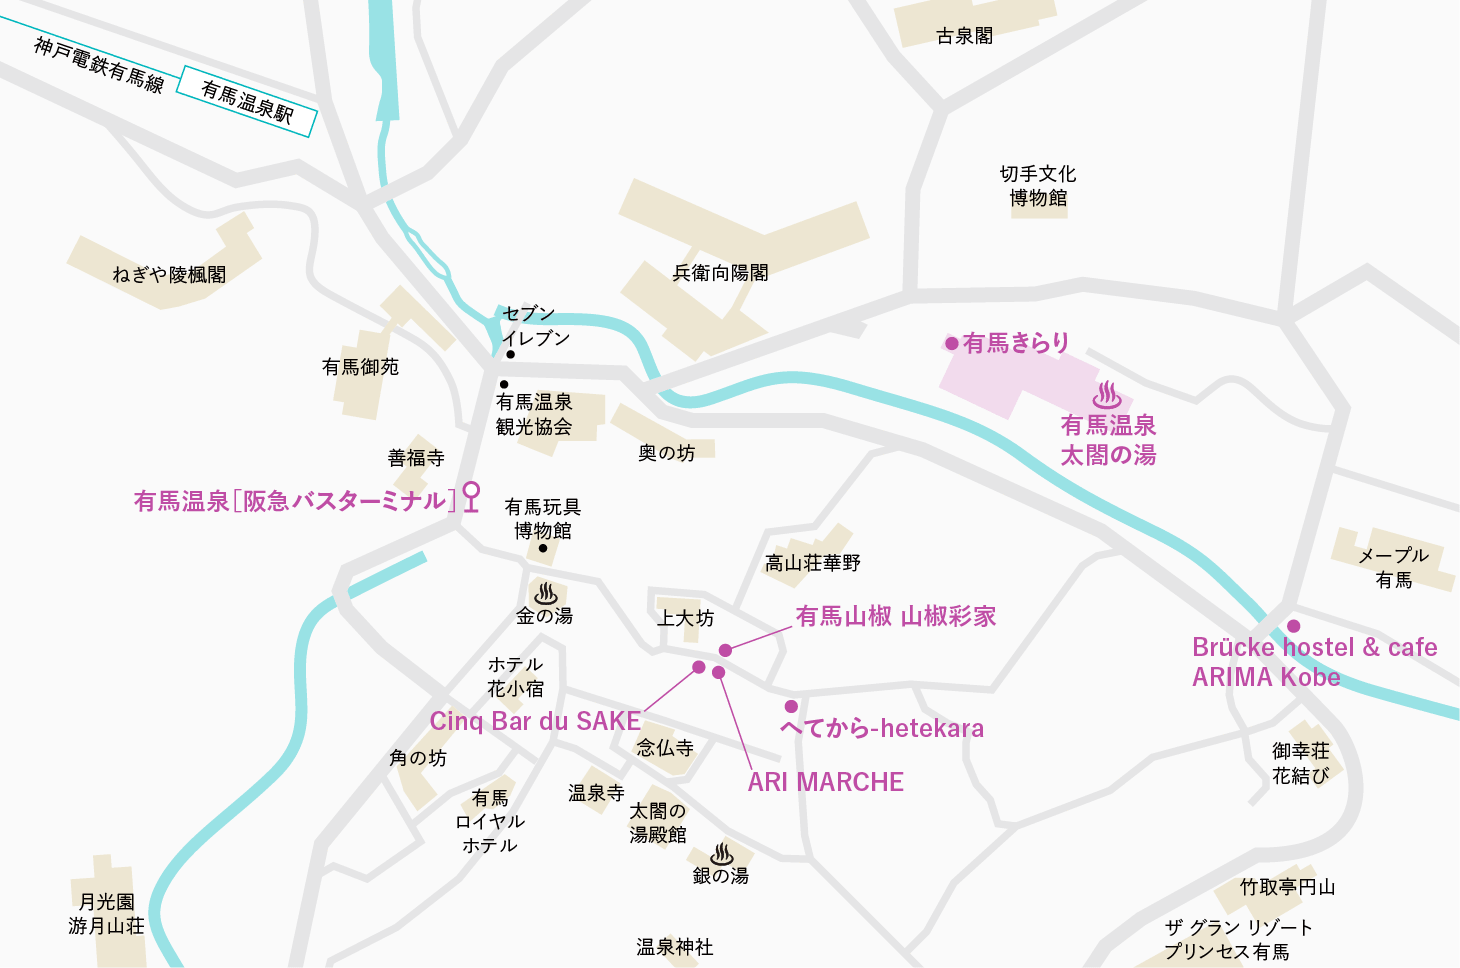 有馬温泉MAP